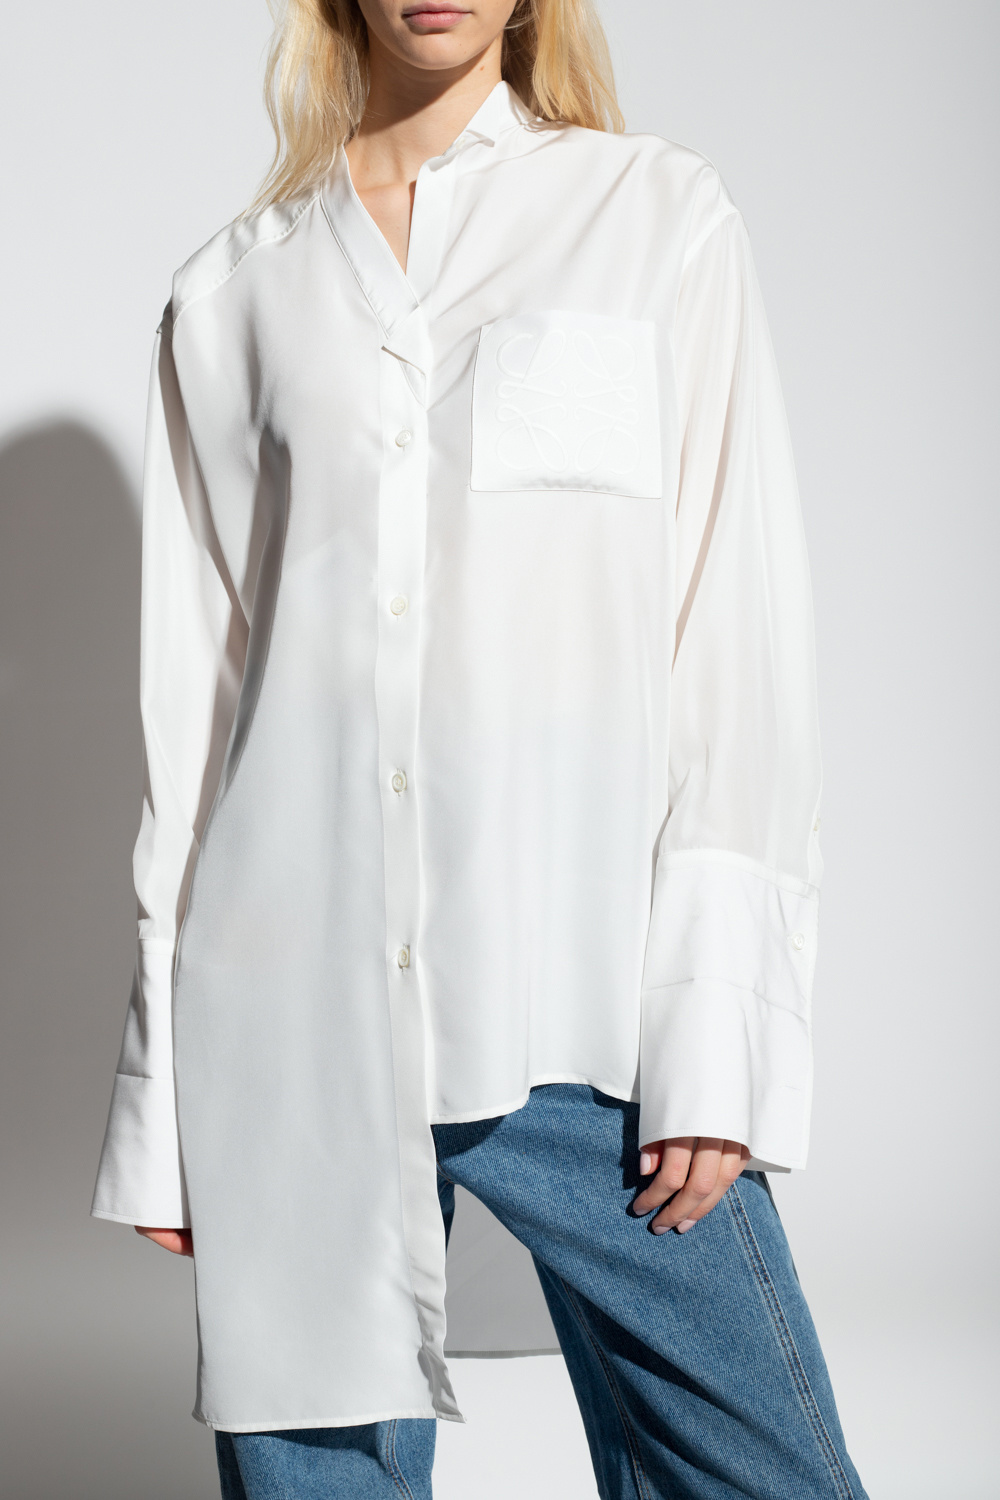 White Silk shirt Fashion Loewe - GenesinlifeShops Denmark - flow